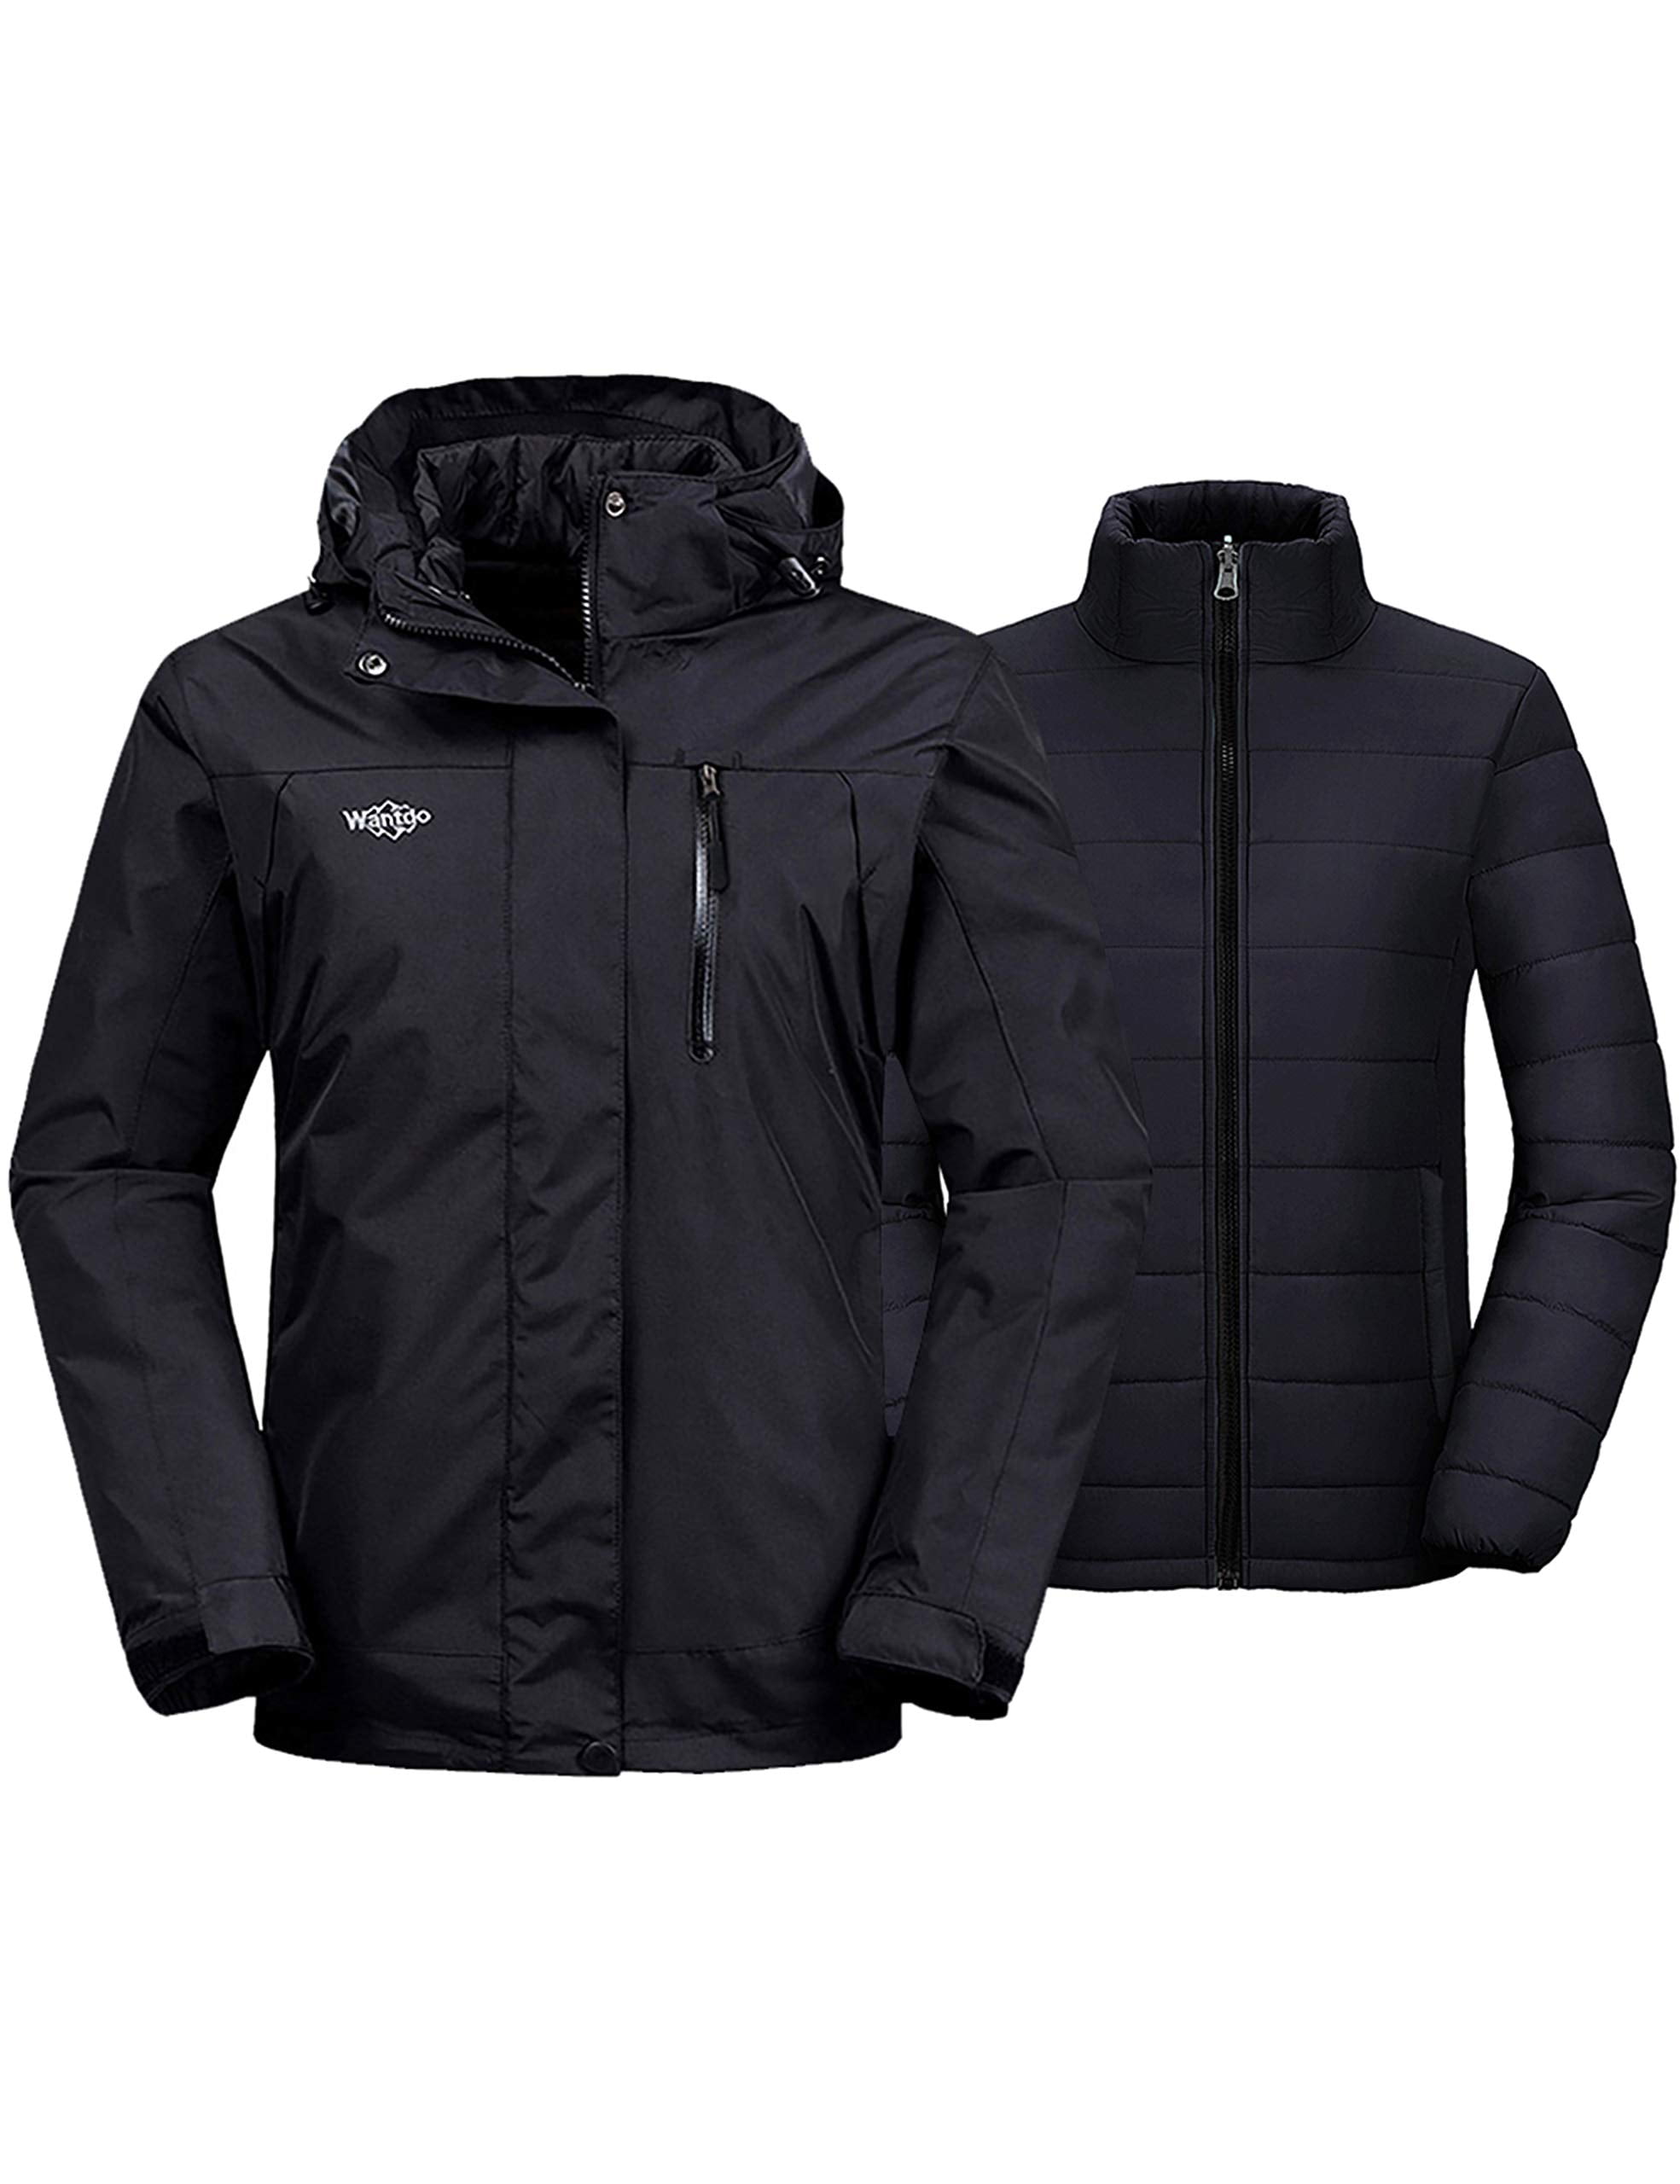 Wantdo Women's Waterproof Ski Jacket Hooded Winter Snow Coat Mountain Snowboarding Jackets Insulated Fleece Parka 